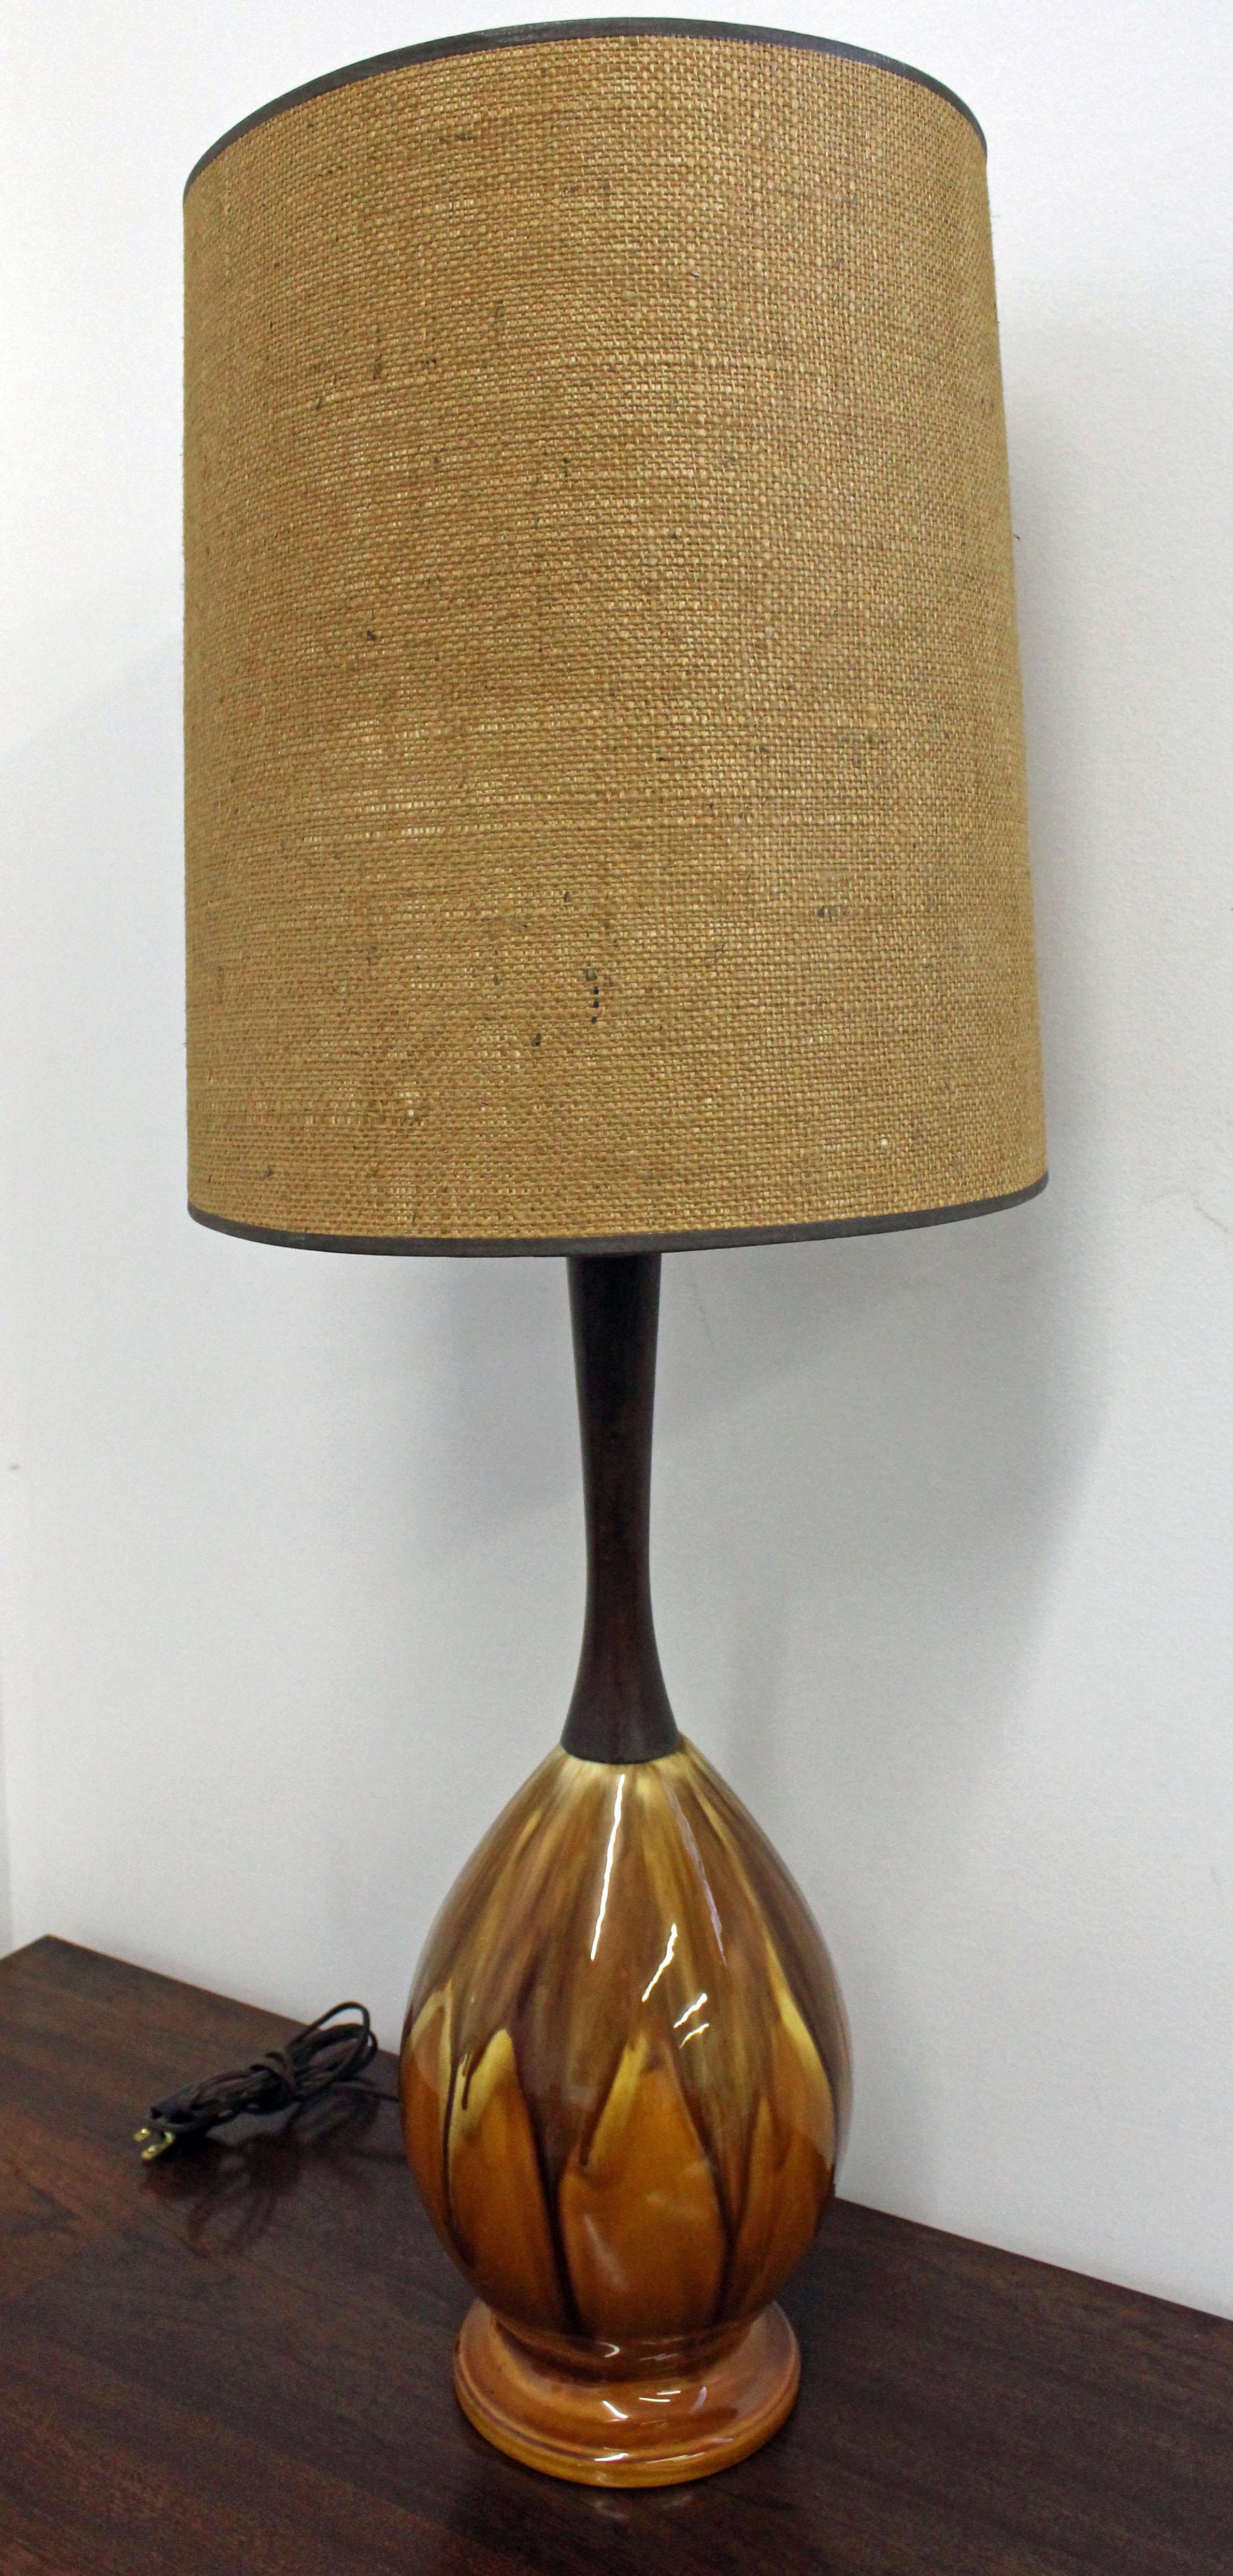 Angeboten wird eine Retro-Vintage-Tischlampe aus Keramik mit Tropfglasur und Walnussholz. Der abgebildete Lampenschirm ist nicht im Lieferumfang enthalten (nur für Ausstellungszwecke). Es ist in gutem, funktionsfähigem Zustand, zeigt leichte